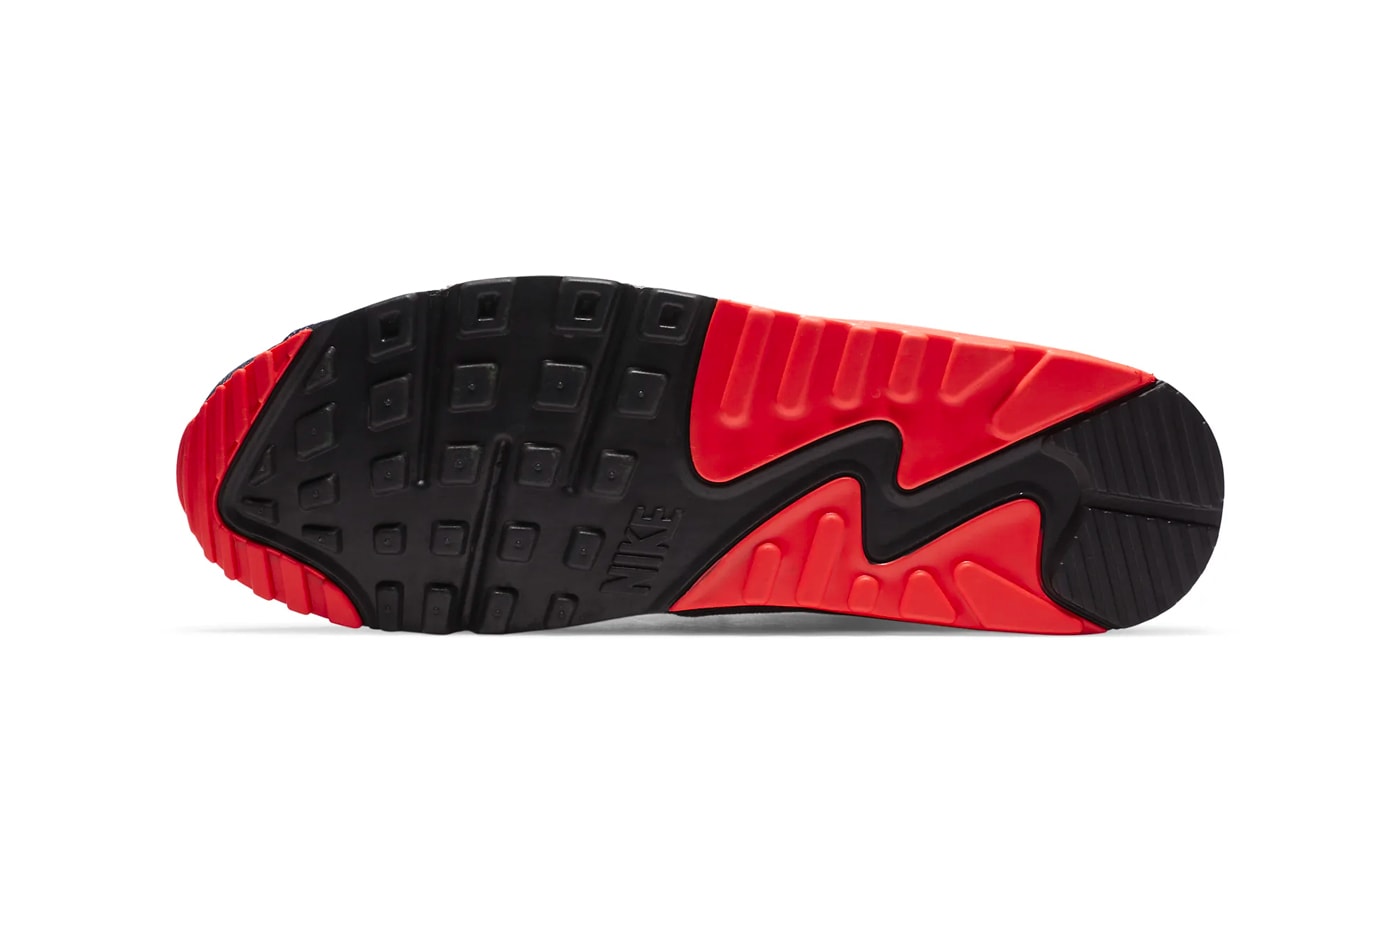 デンハム x ナイキからデニム素材を用いたエアマックス95が登場 Denham Nike Air Max 95 Air Max 90 DD9519-001 CU1646-400 Release footwear sneakers denim kicks shoes 